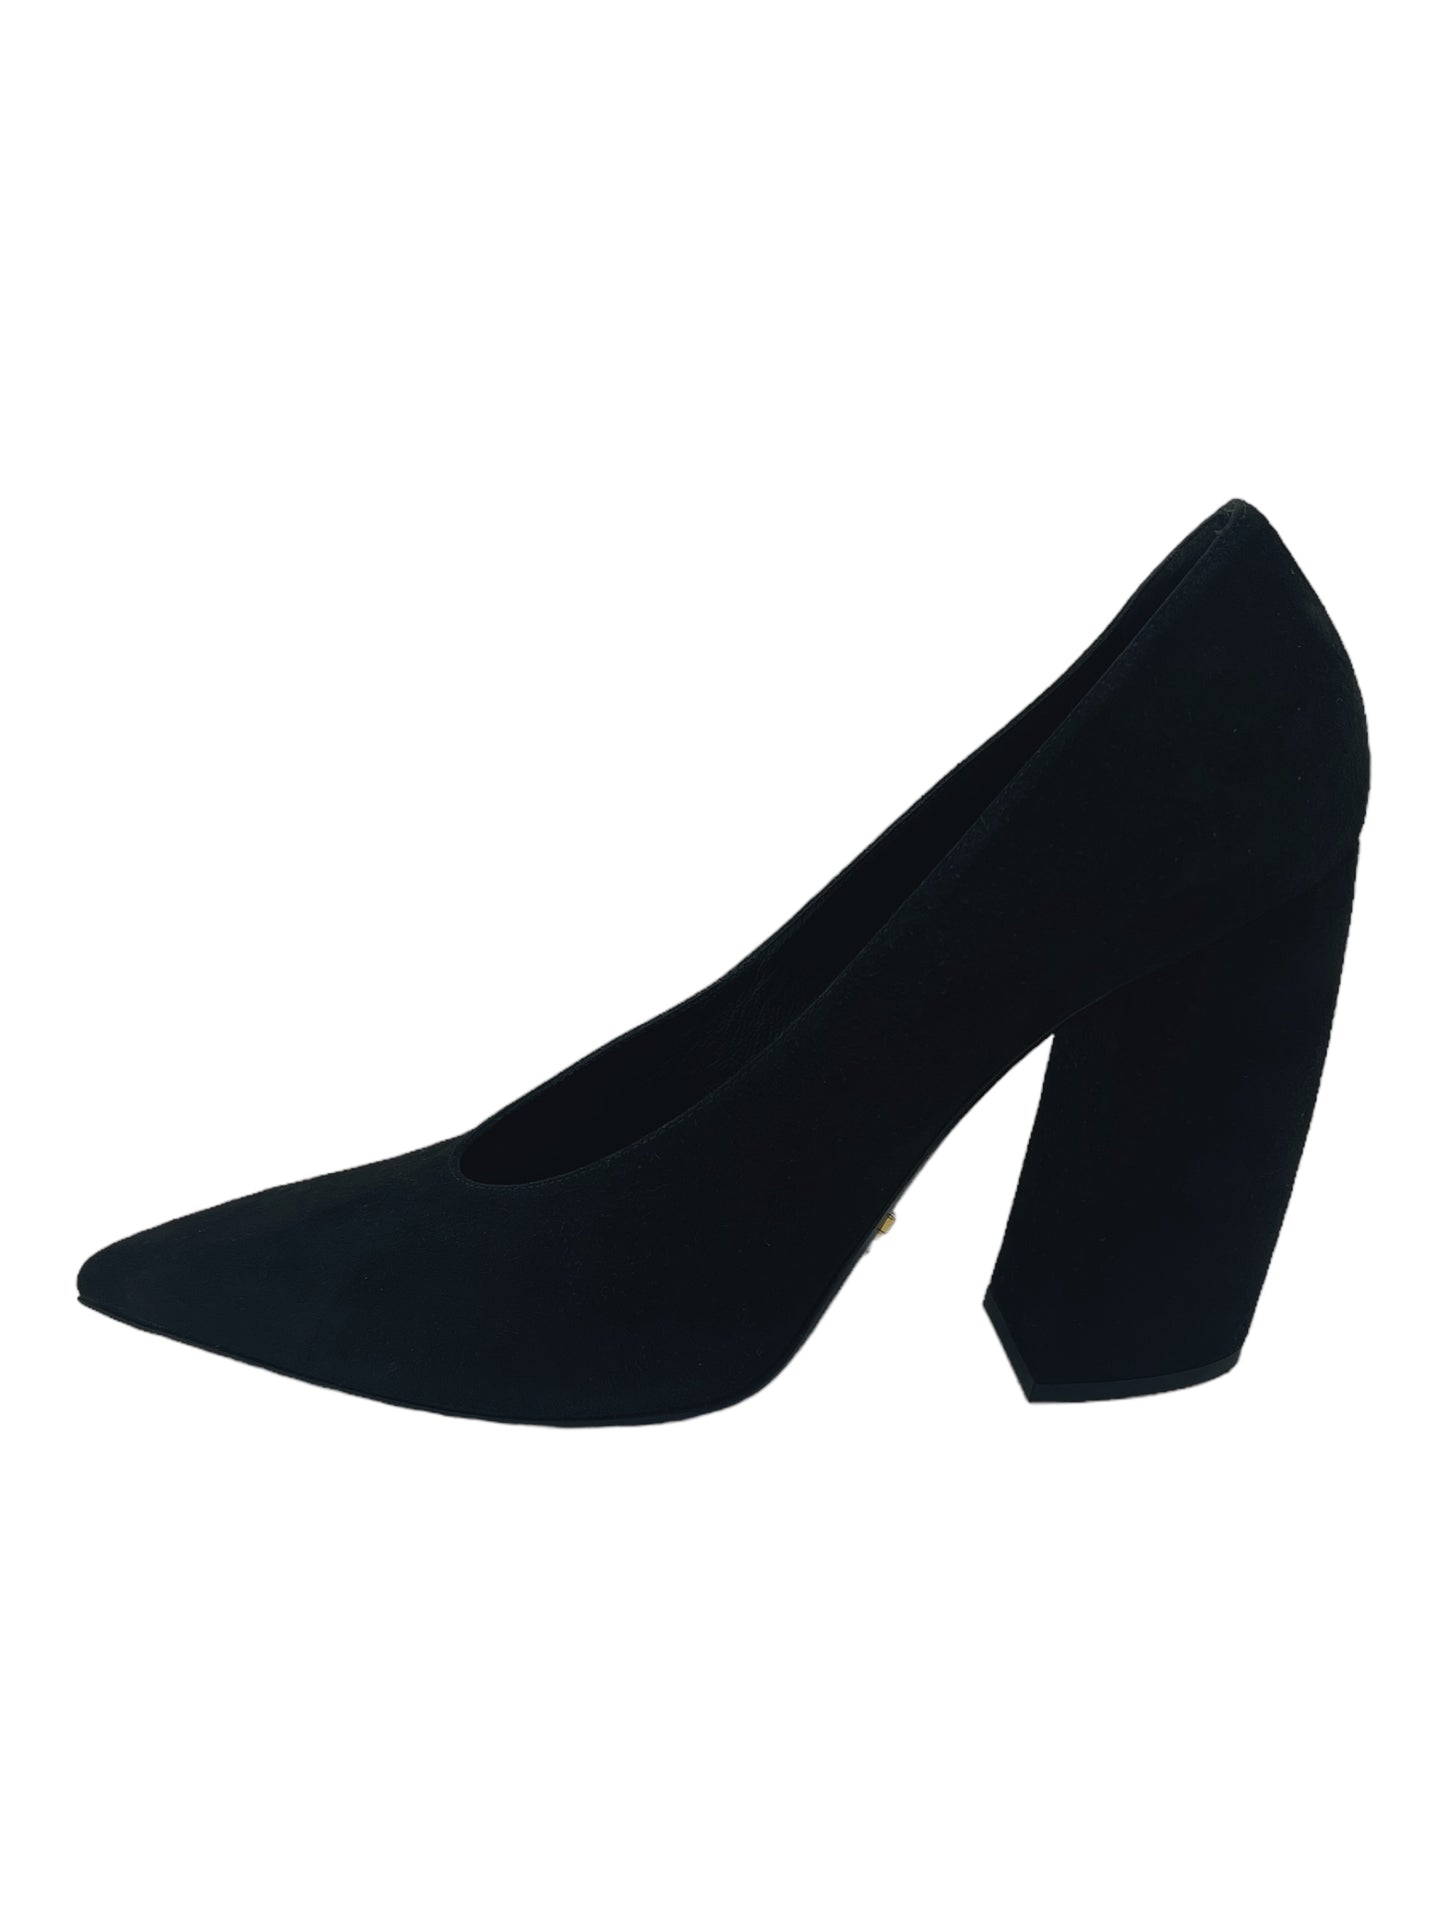 Prada Black Suede Pointed Toe High Heels 8 W